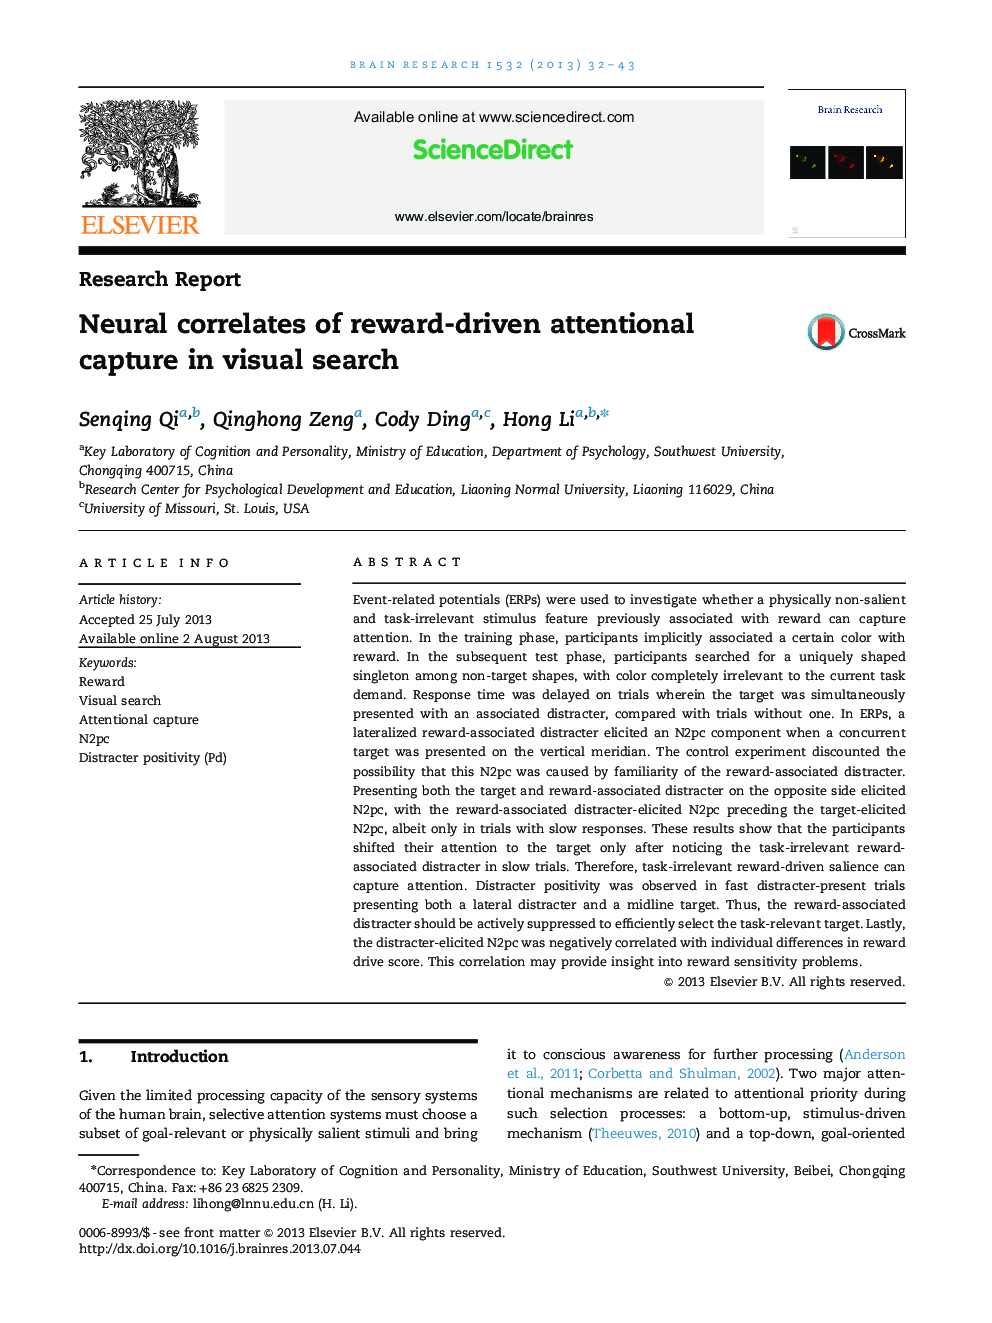 گزارش تحقیق ارتباطات غیر عادی ضبط توجه به پاداش در جستجوی بصری 